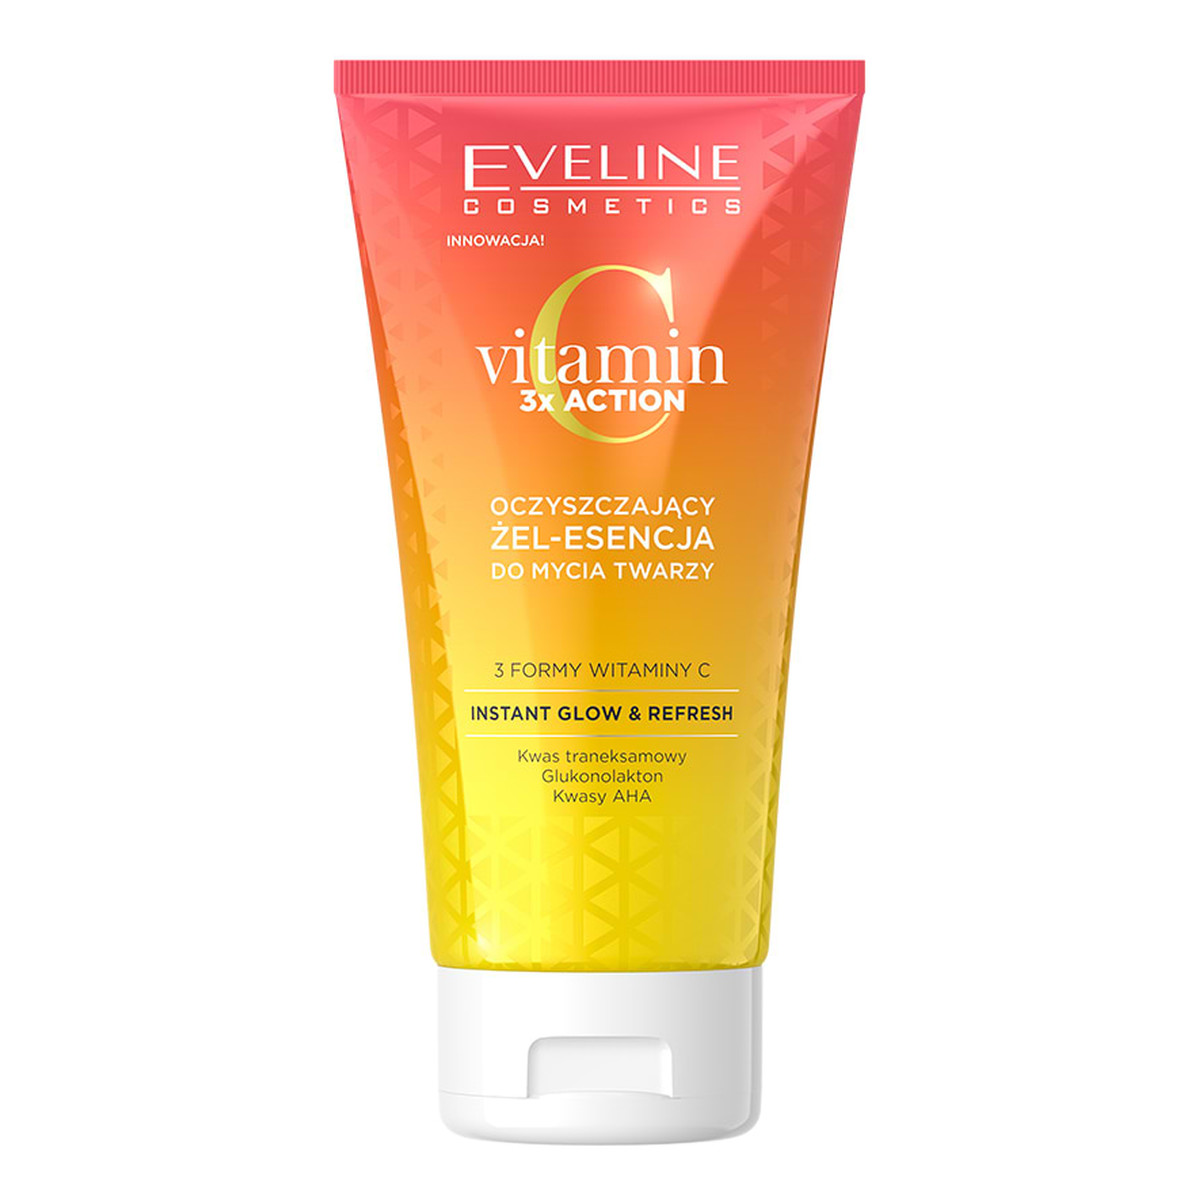 Eveline Vitamin C 3X Action Oczyszczający żel-esencja do mycia twarzy 150ml